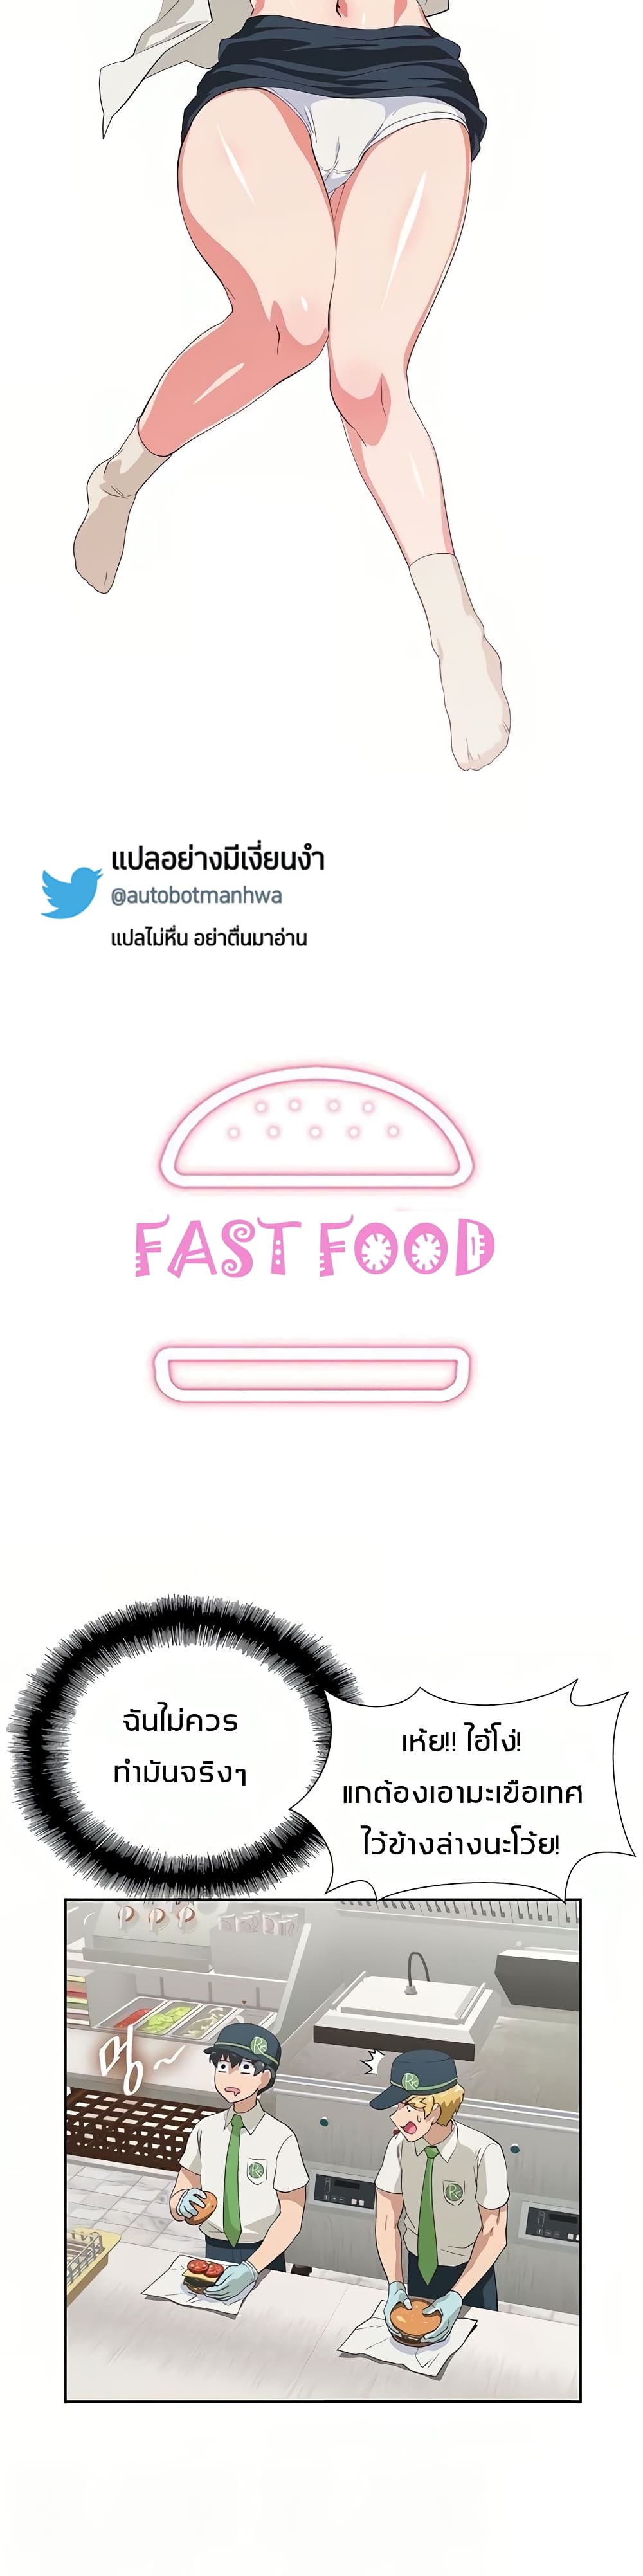 Fast Food 9-9